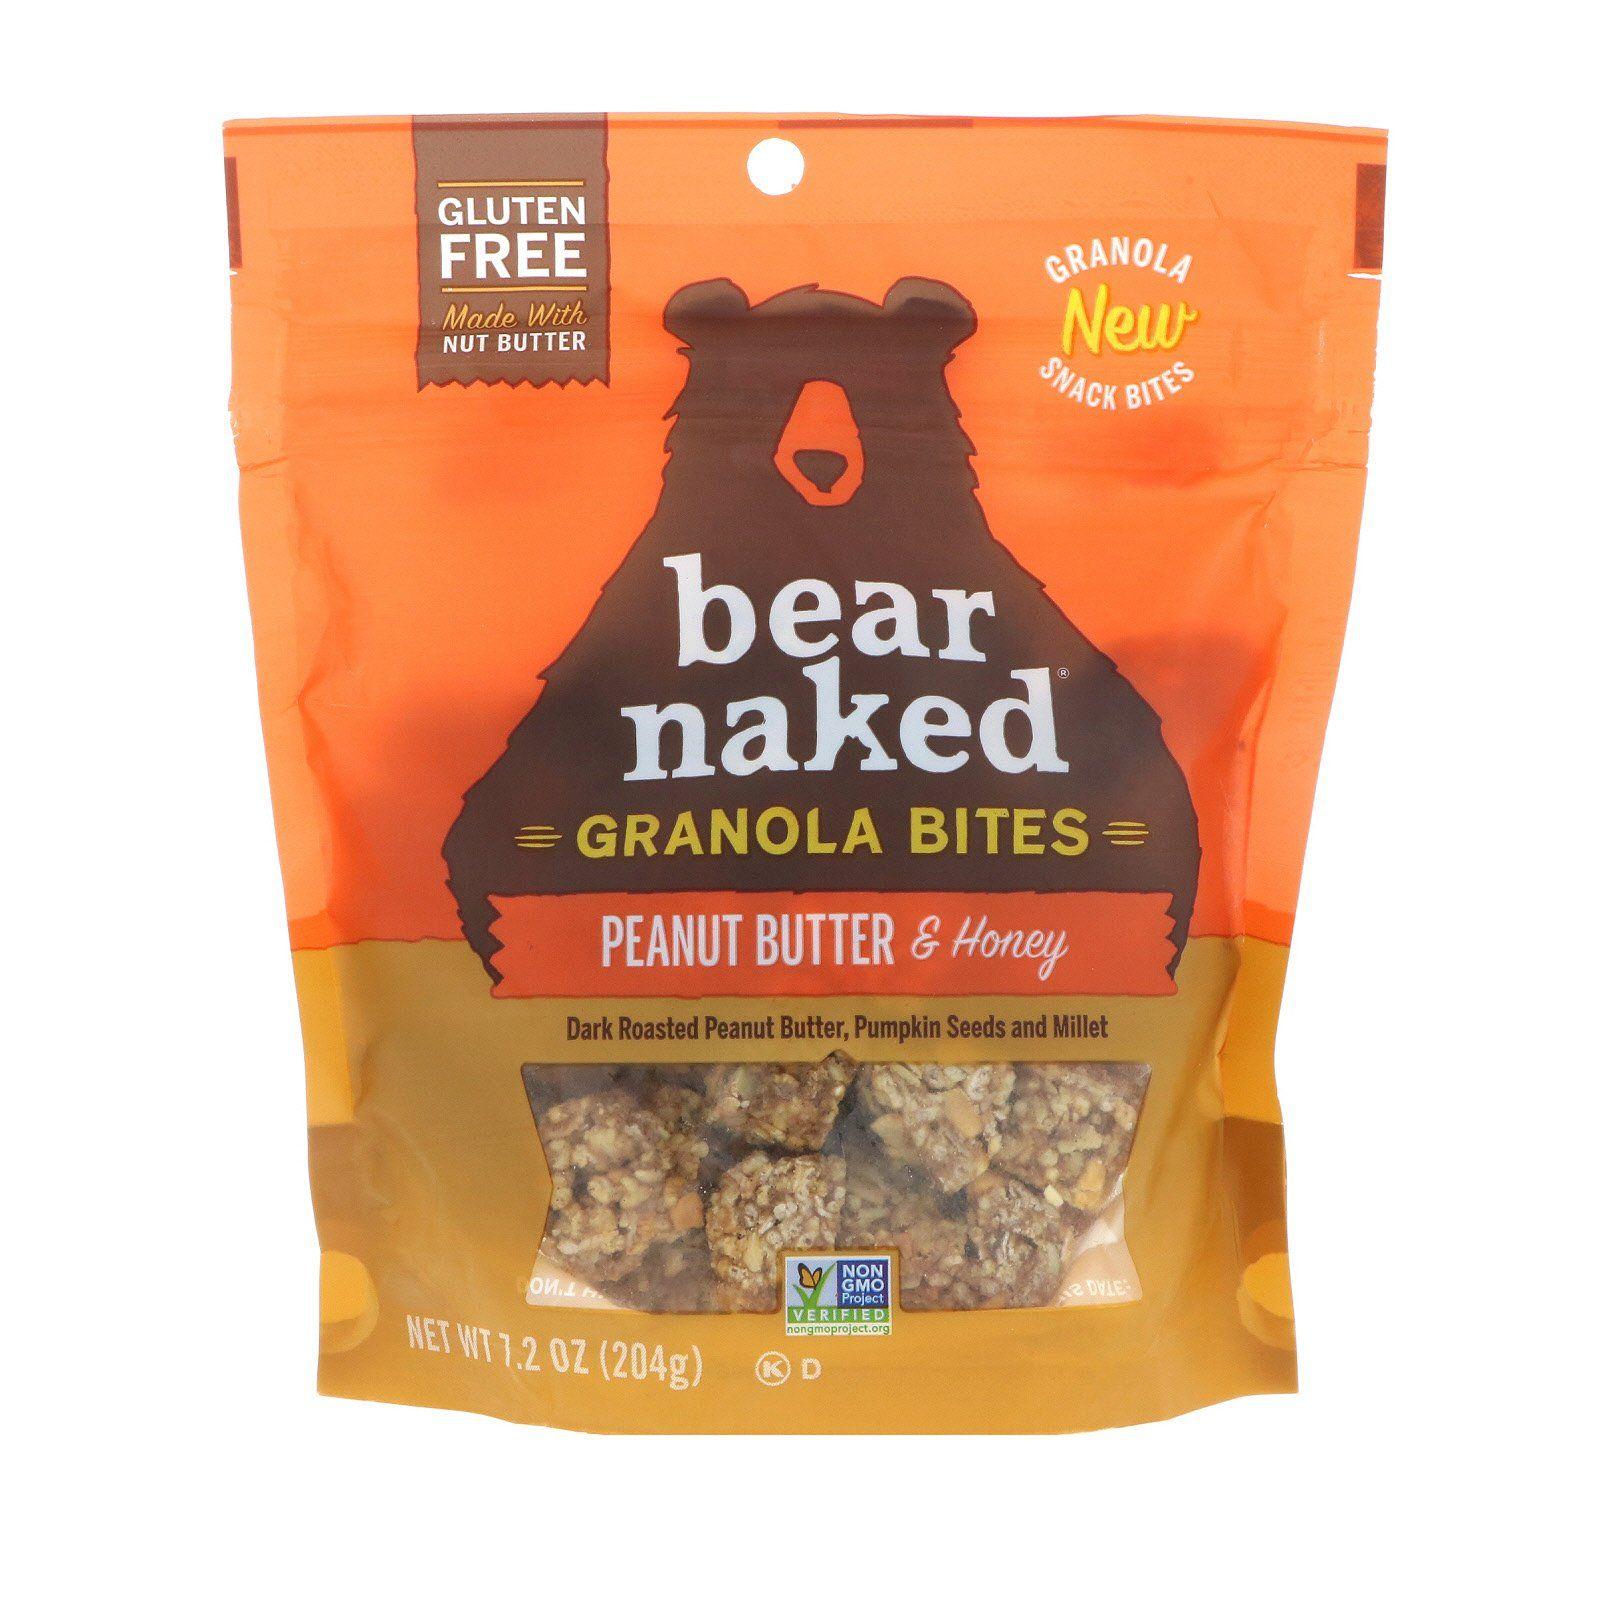 Bear naked granola history